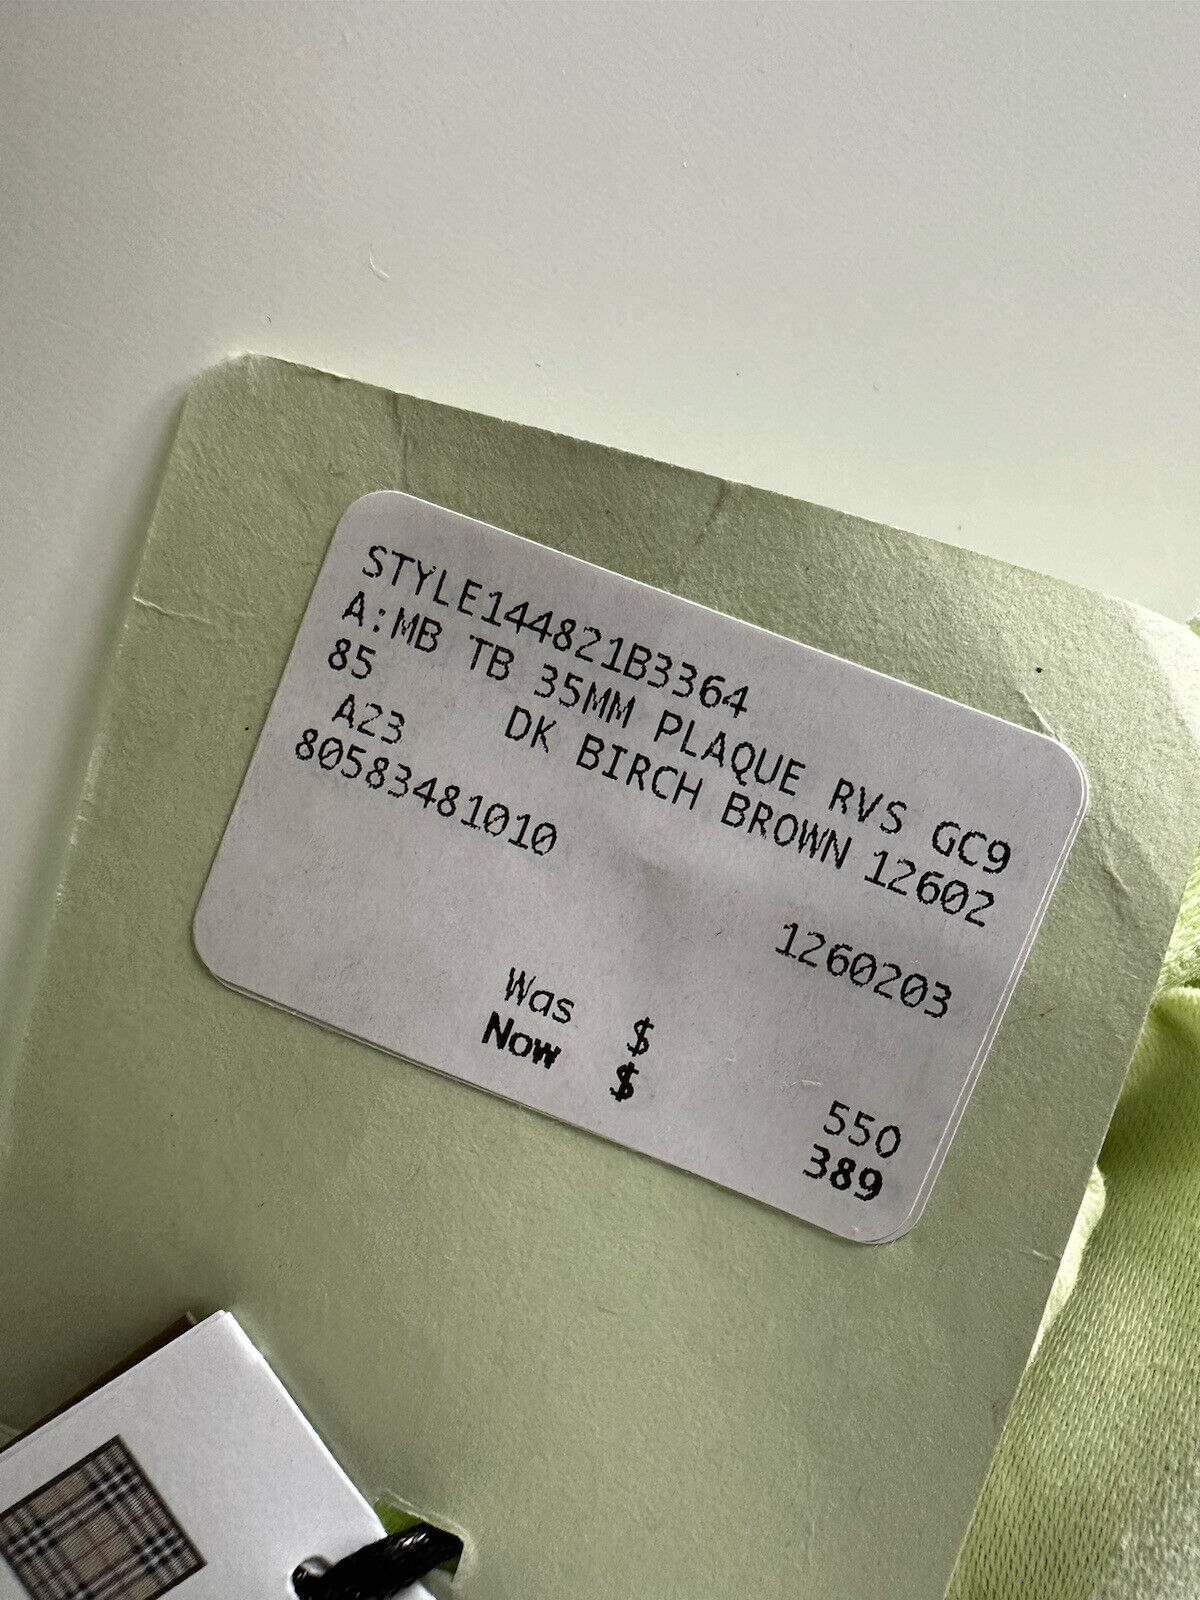 Neu mit Etikett: 550 $ Burberry TB Leder-Wendegürtel aus dunkler Birke 34/85 8058348 Italien